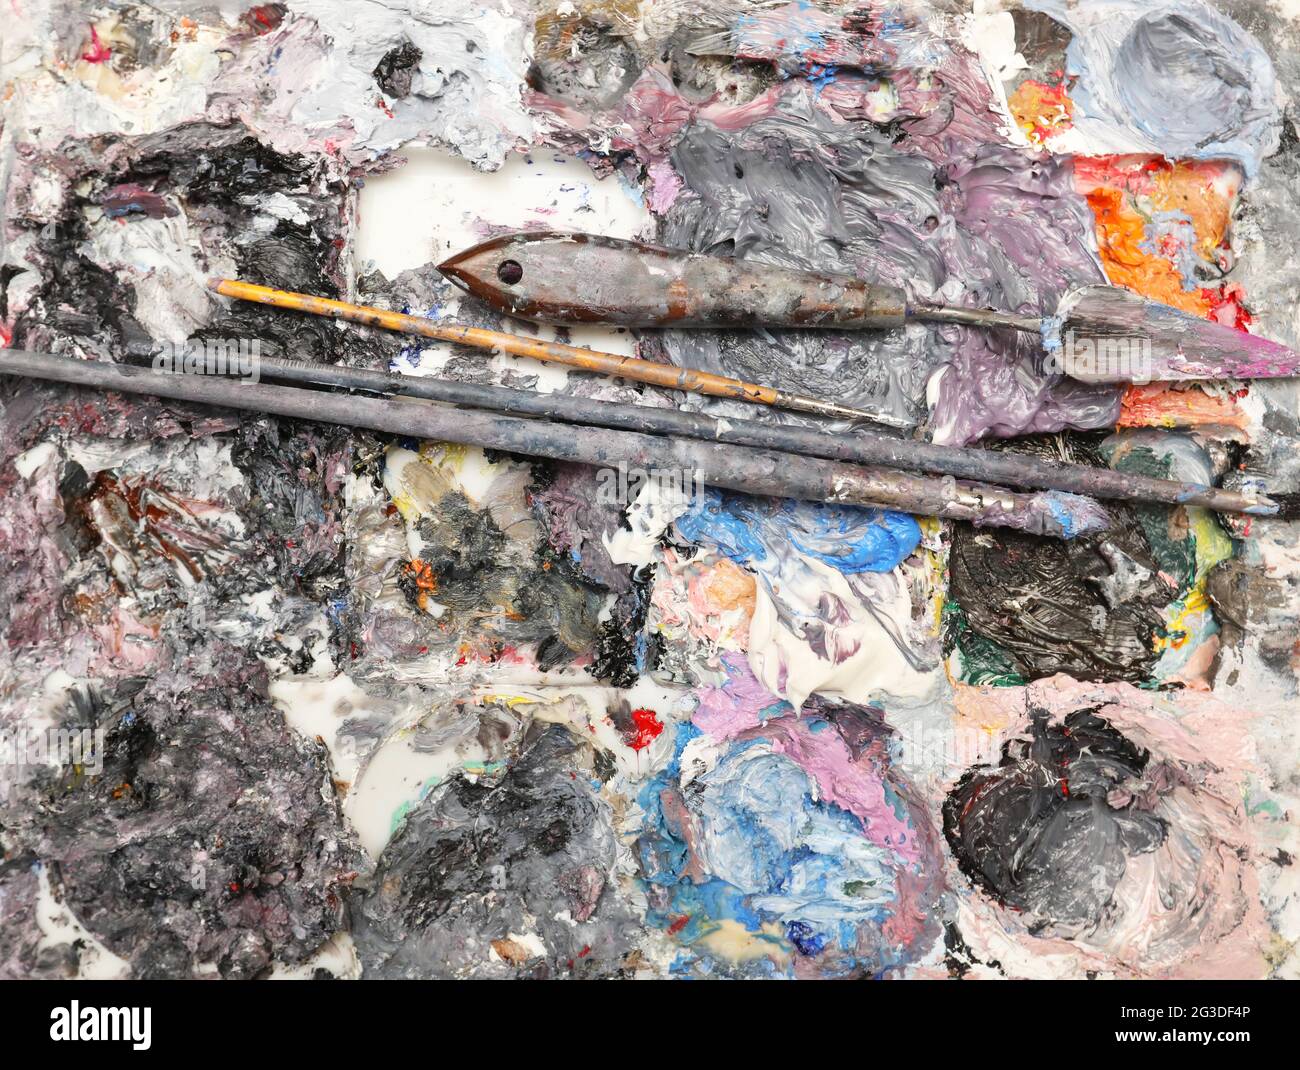 Une vue complète d'une palette de peinture d'artistes chargée de peinture à l'huile humide riche et épaisse, de pinceaux et de couteau à modeler de palette. Isolé sur un fond blanc Banque D'Images